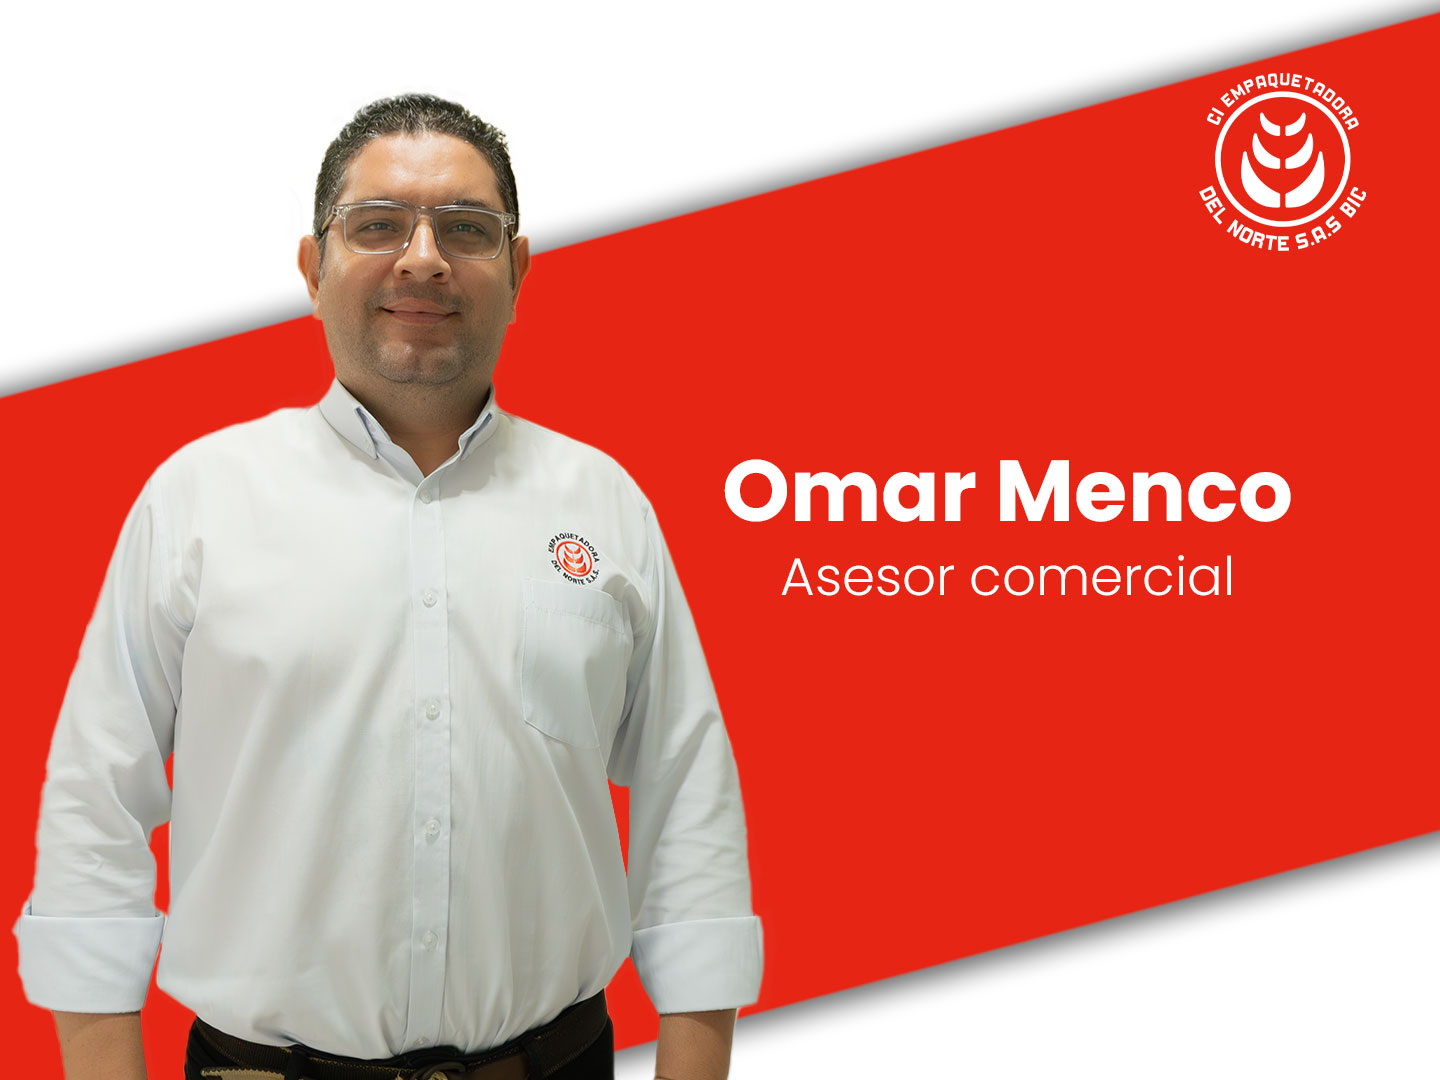 Omar Menco